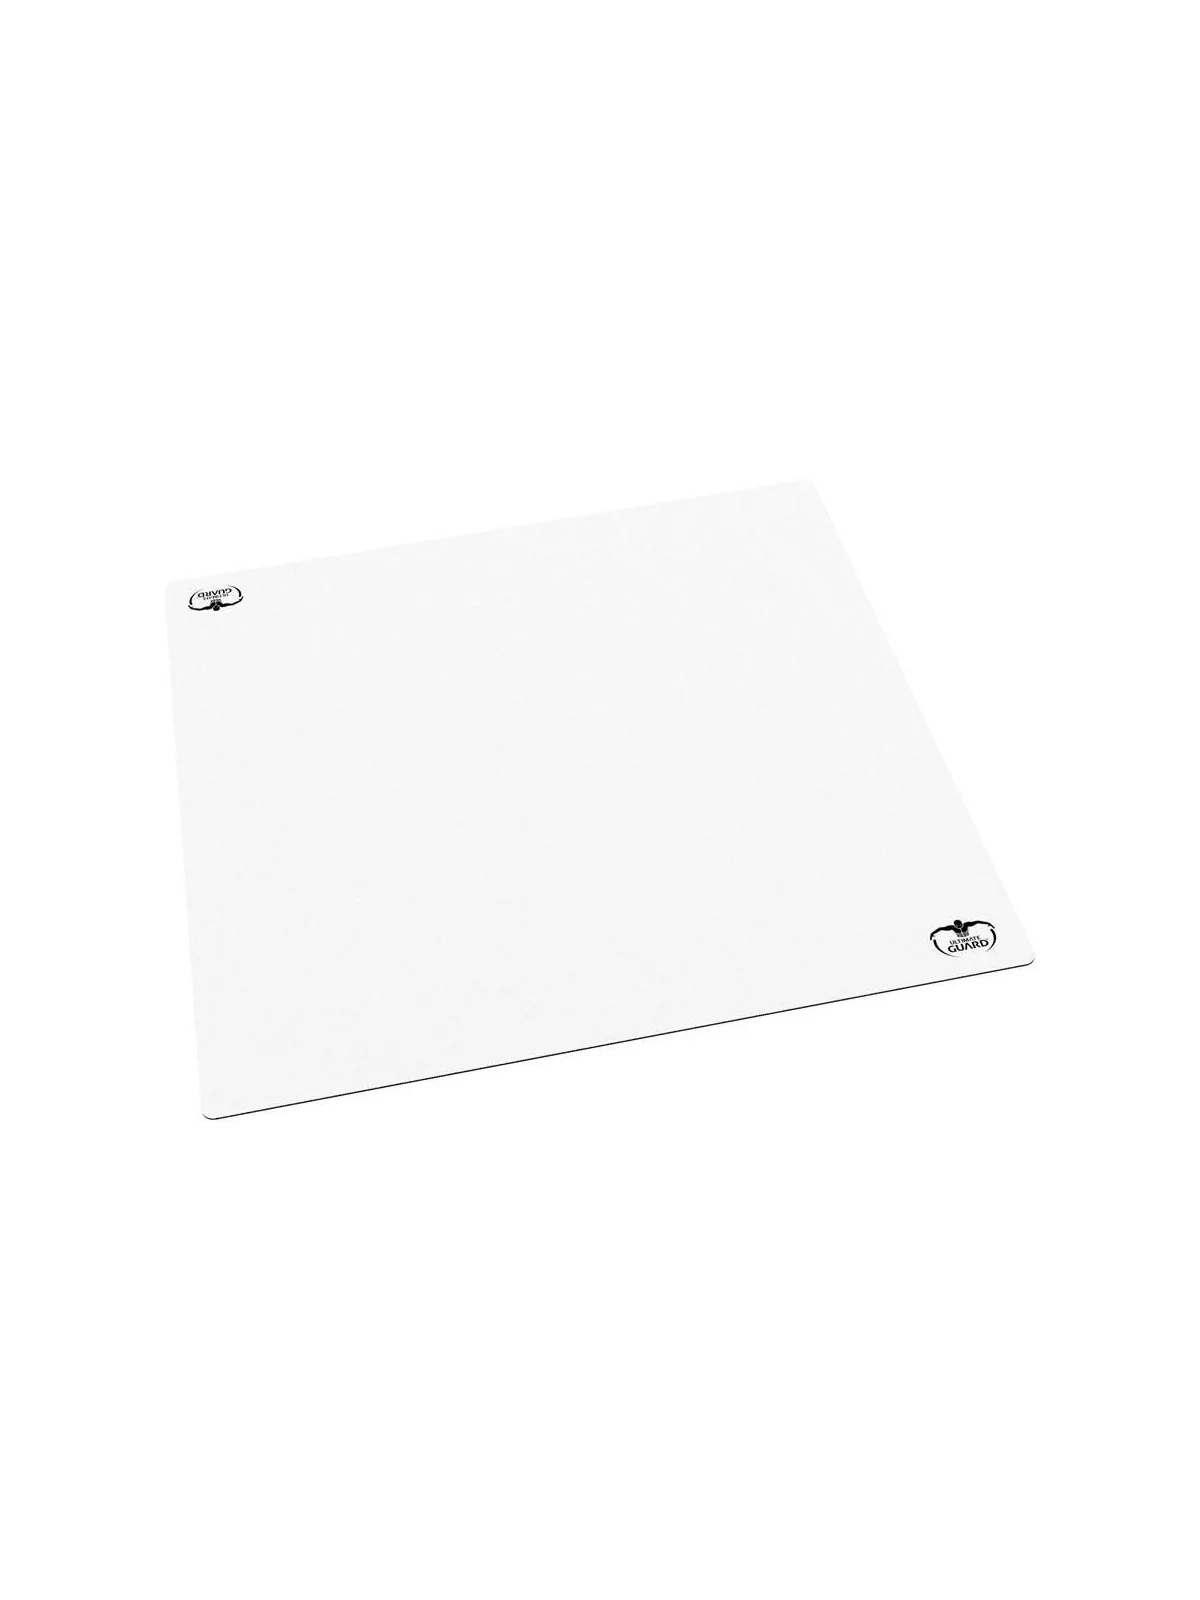 Comprar Ultimate Guard Tapete 60 Monochrome Blanco 61 x 61 cm barato a